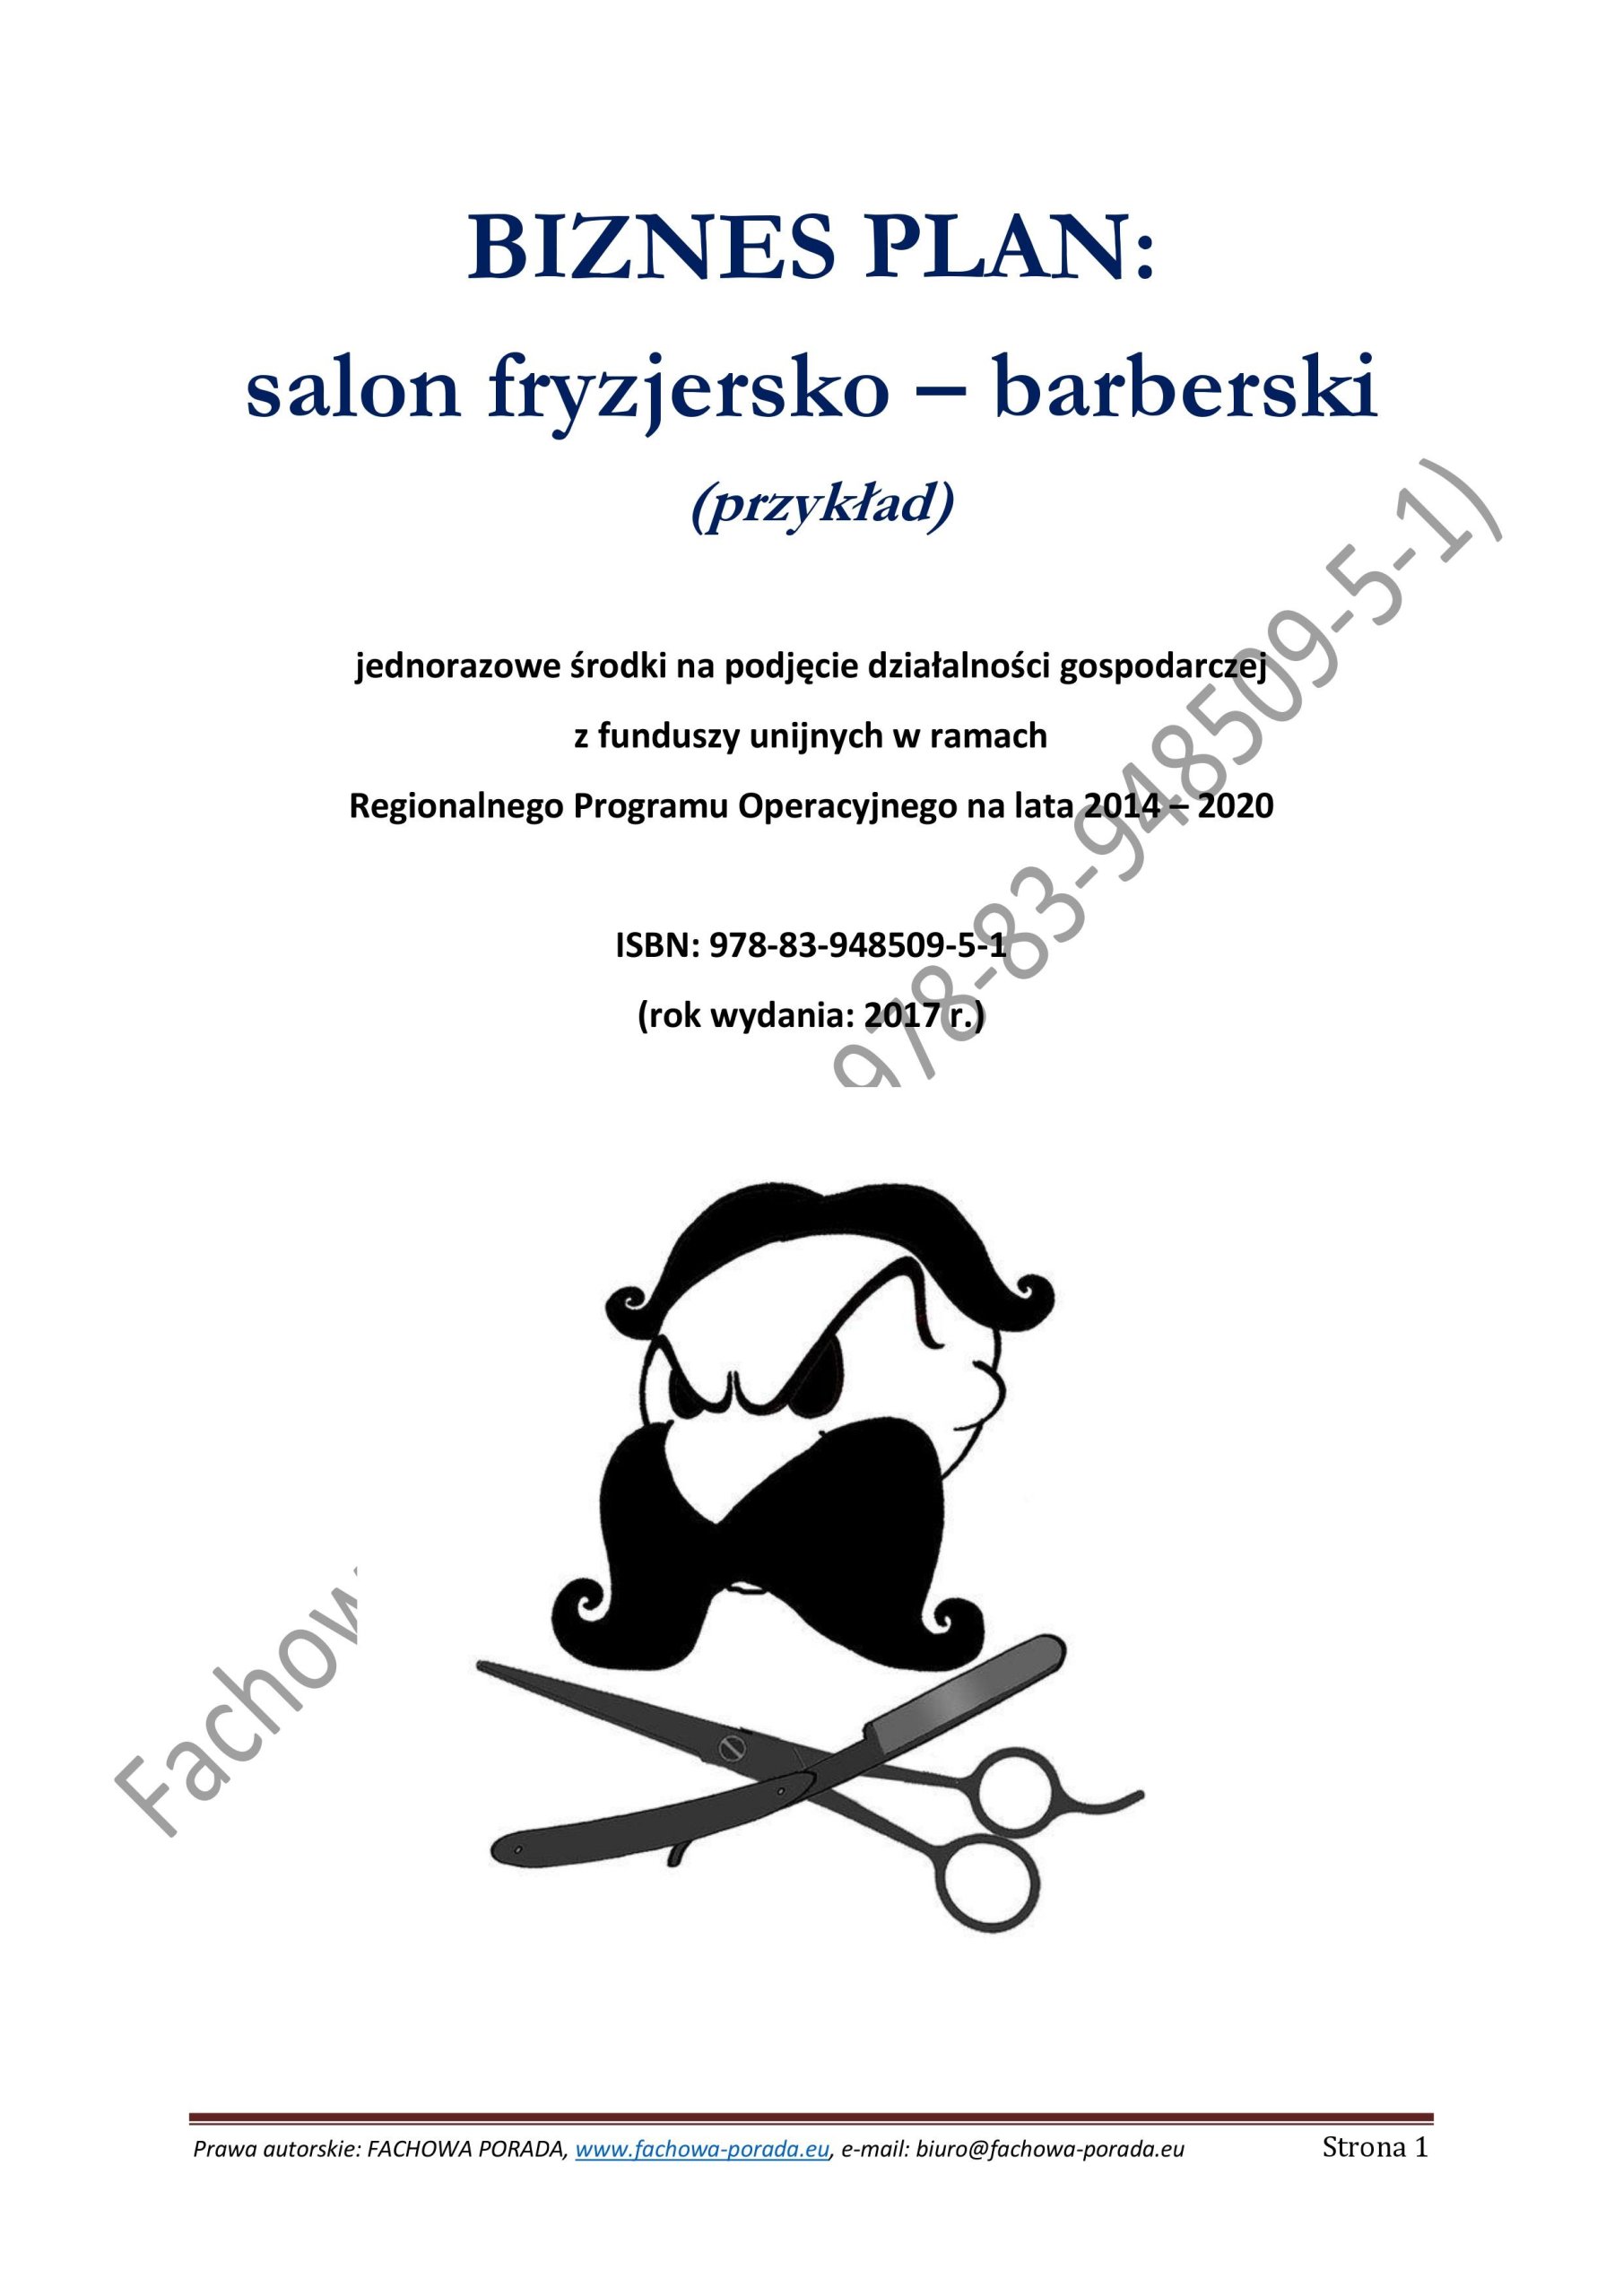 Biznesplan Salon Fryzjersko Barberski 39 90 Zl Allegro Pl Raty 0 Darmowa Dostawa Ze Smart Serock Stan Nowy Id Oferty 7034259865